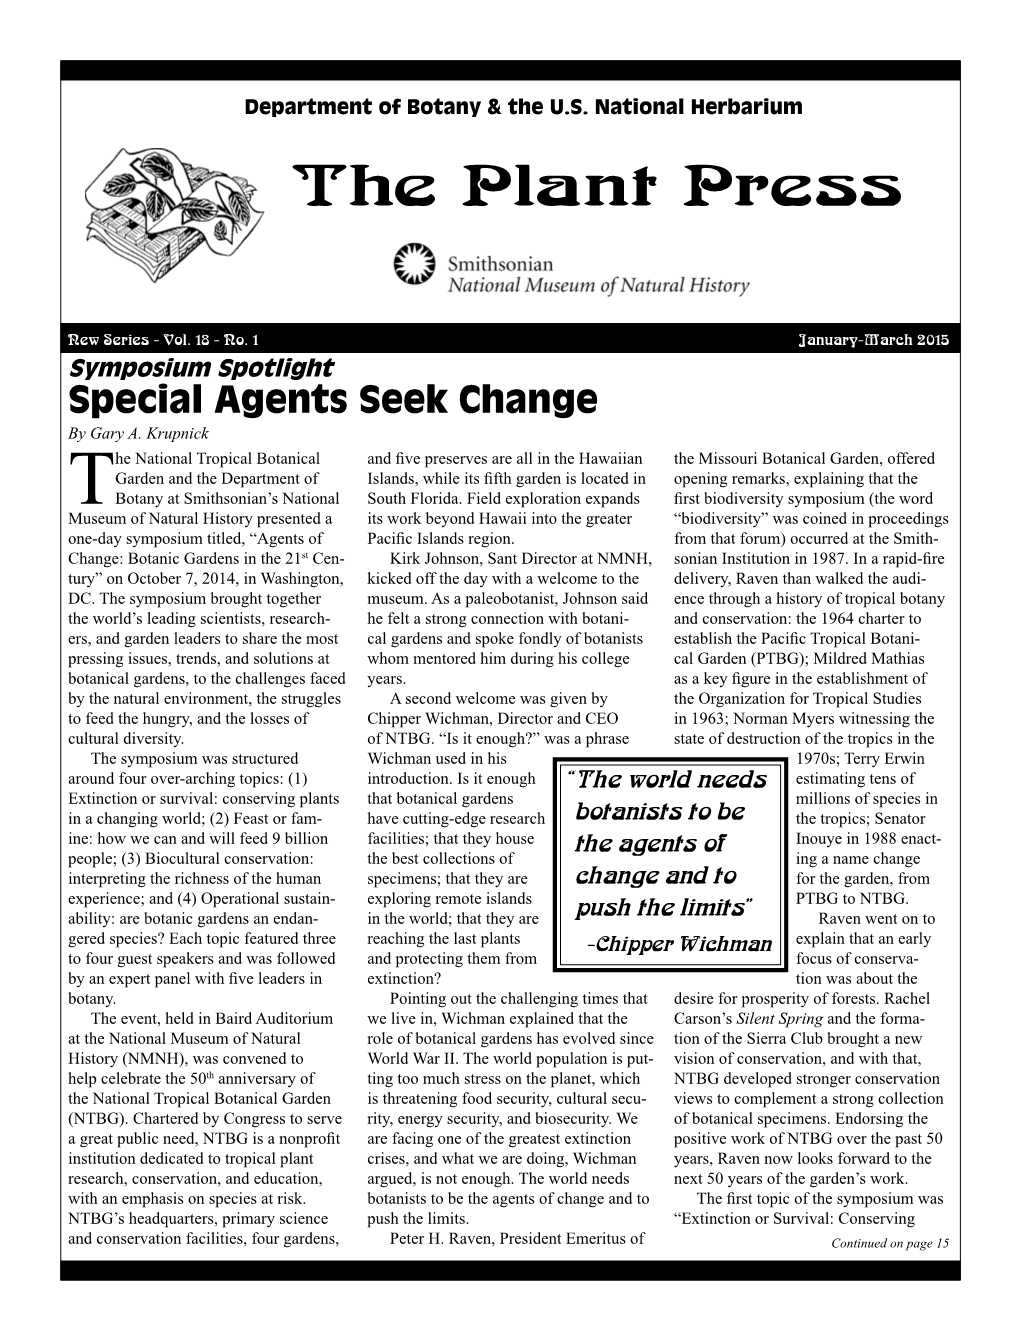 Plant Press, Vol. 18, No. 1